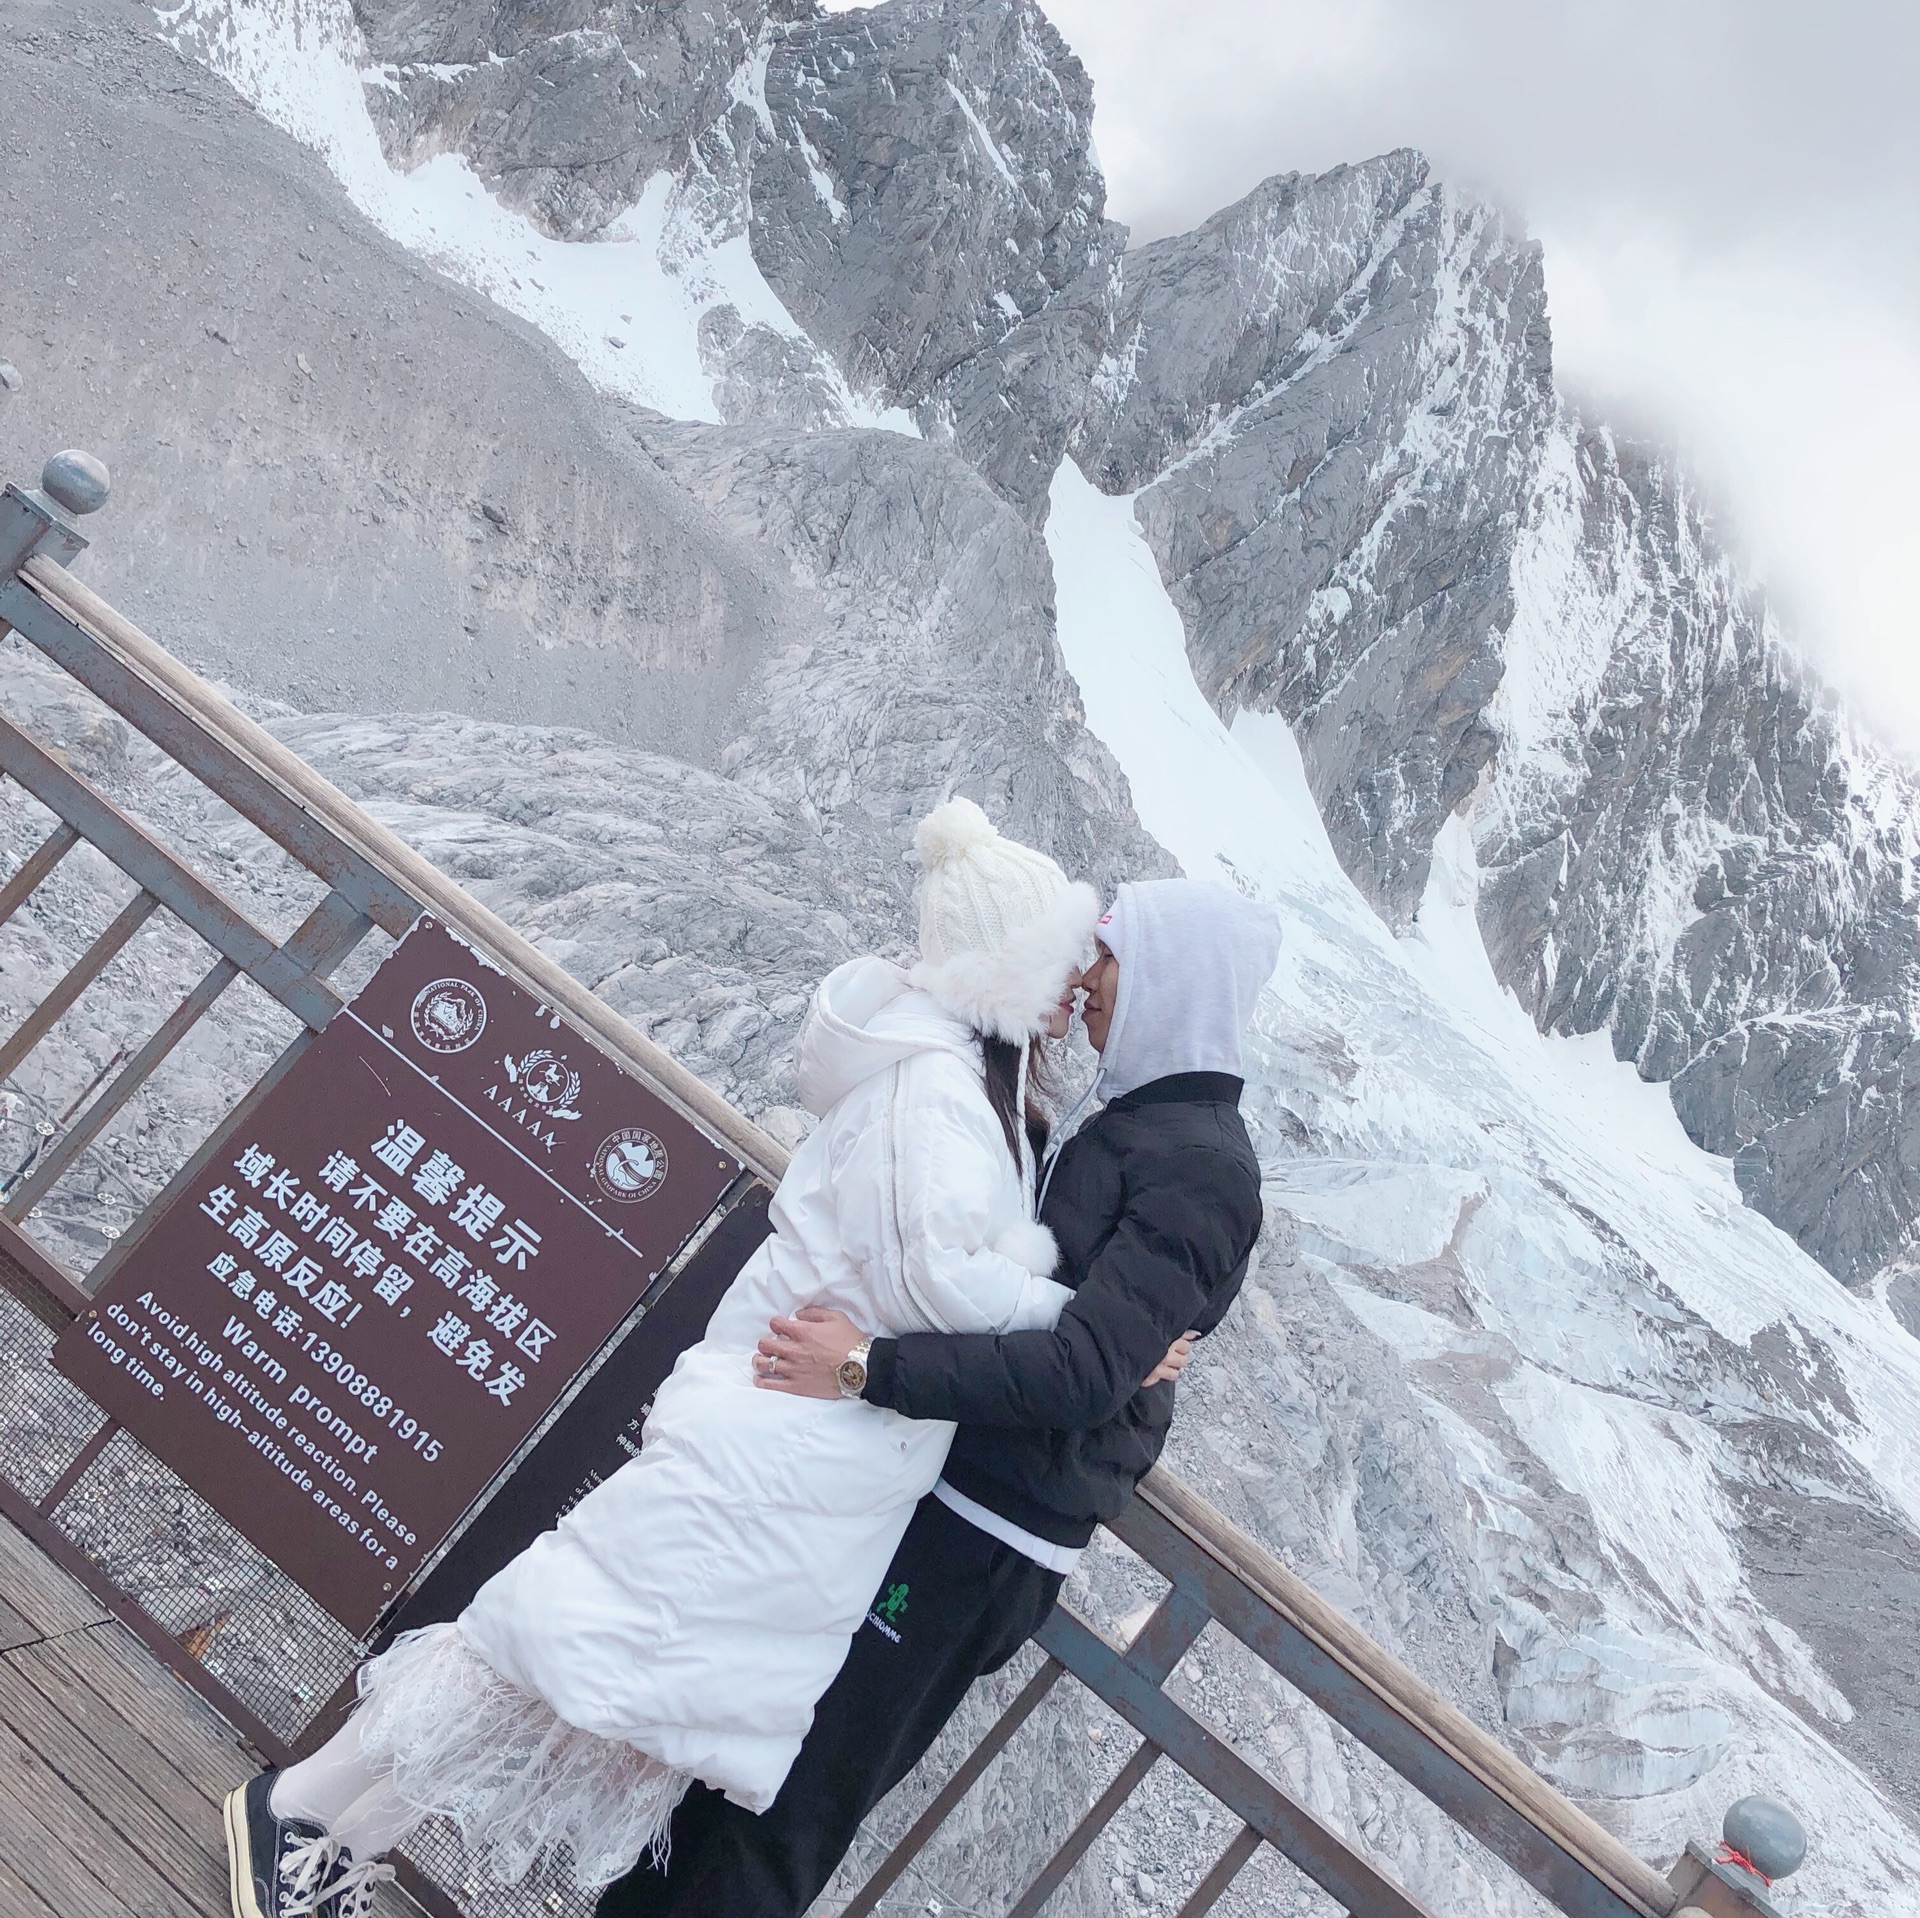 10月的玉龙雪山与蓝月谷开启我的蜜月之旅蜜月的第一站选择了_玉龙雪山